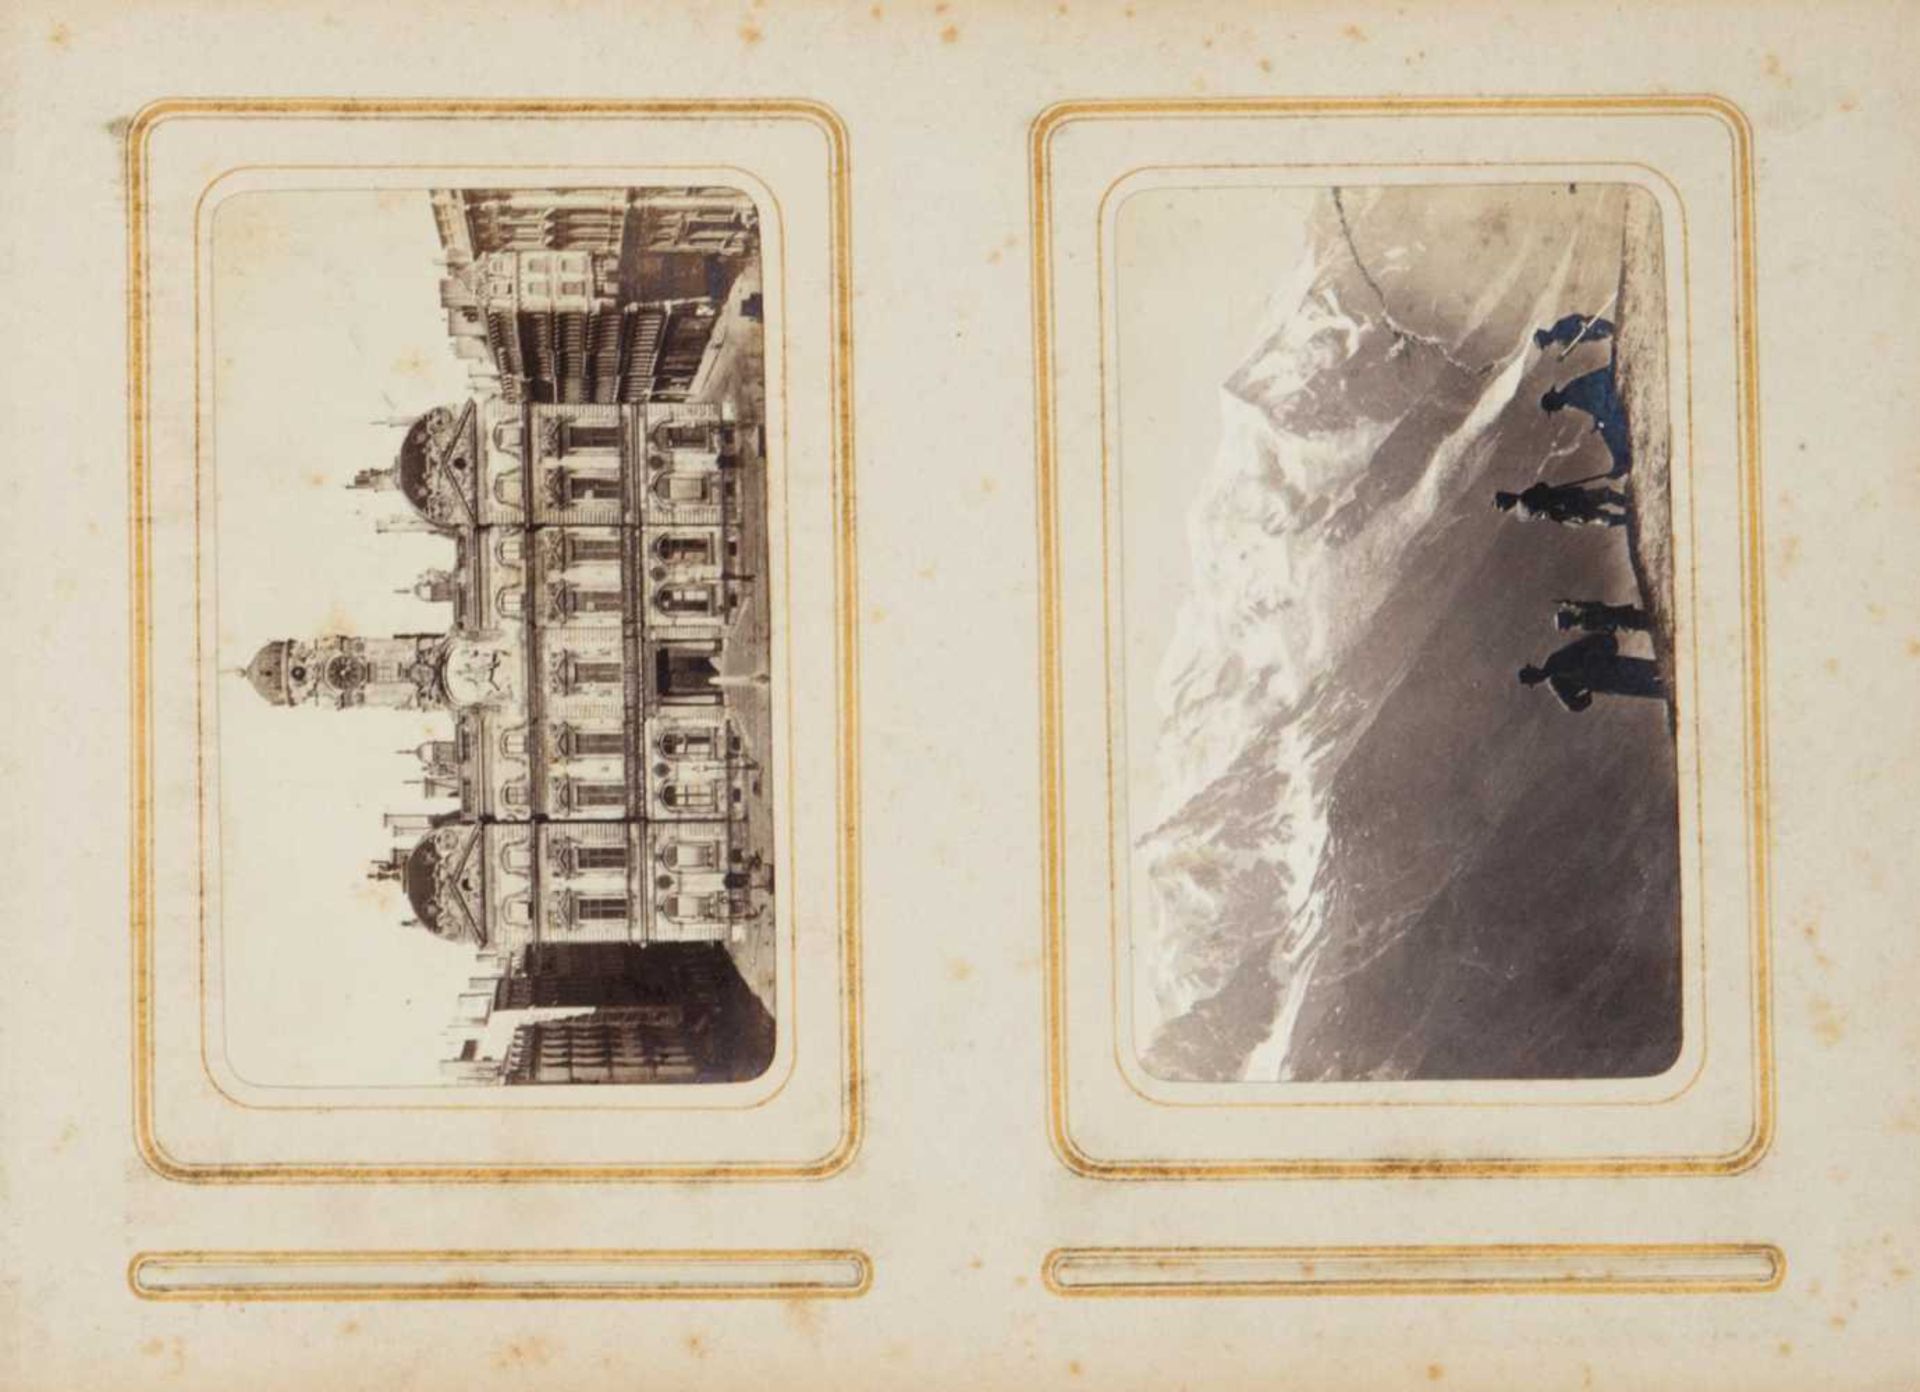 album de photographies anciennes représentant des grandes villes européennes, époque Napoléon III - Bild 3 aus 3